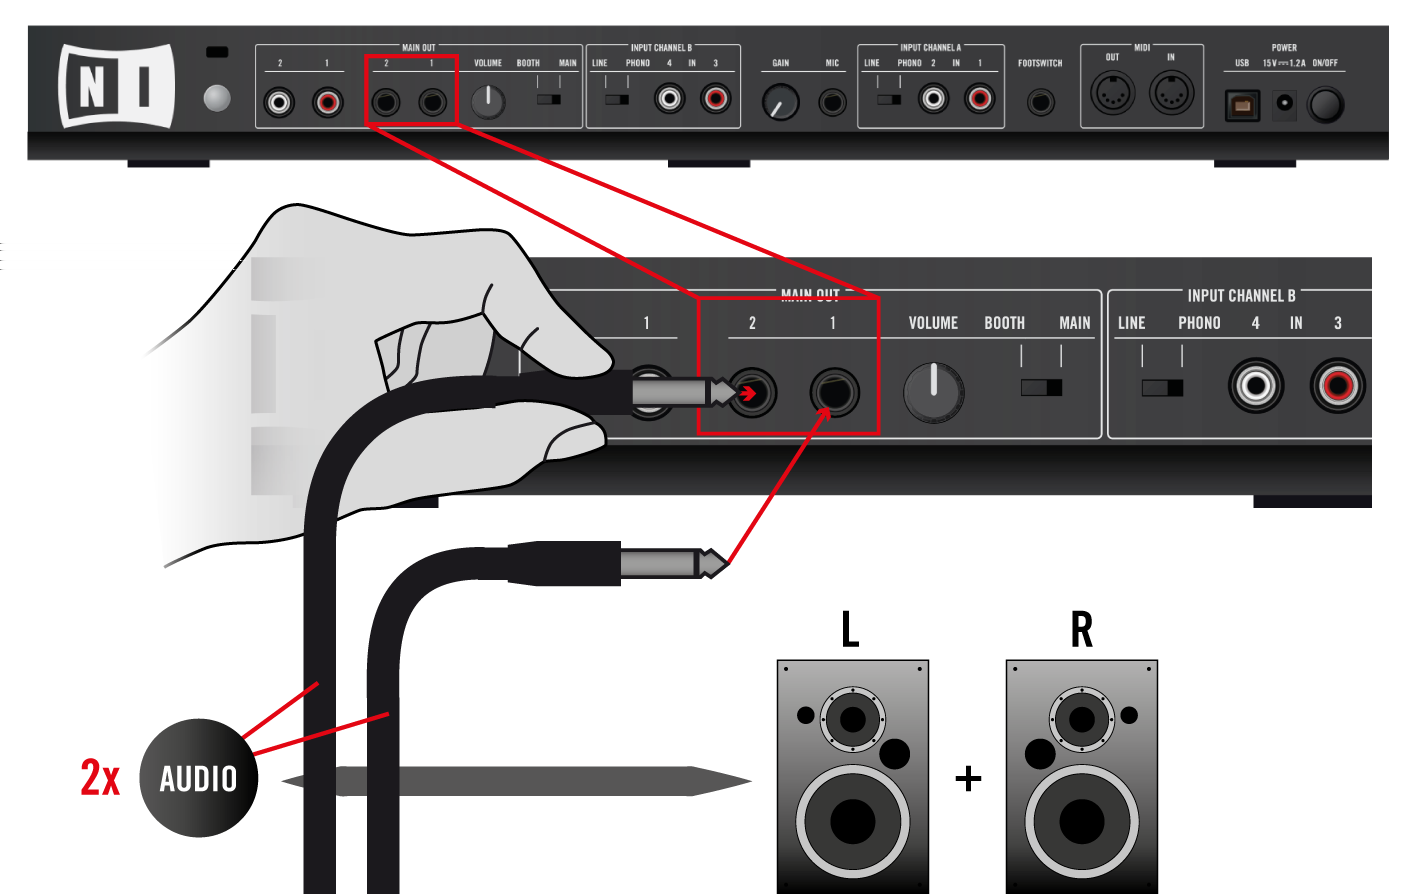 Anhang A - Typische Setups TRAKTOR KONTROL S4 Allgemeines Setup Drehen Sie alle Lautstärkeregler herunter Bevor Sie ein der Audiokabel anschließen, kontrollieren Sie, ob alle Lautstärkeregler auf